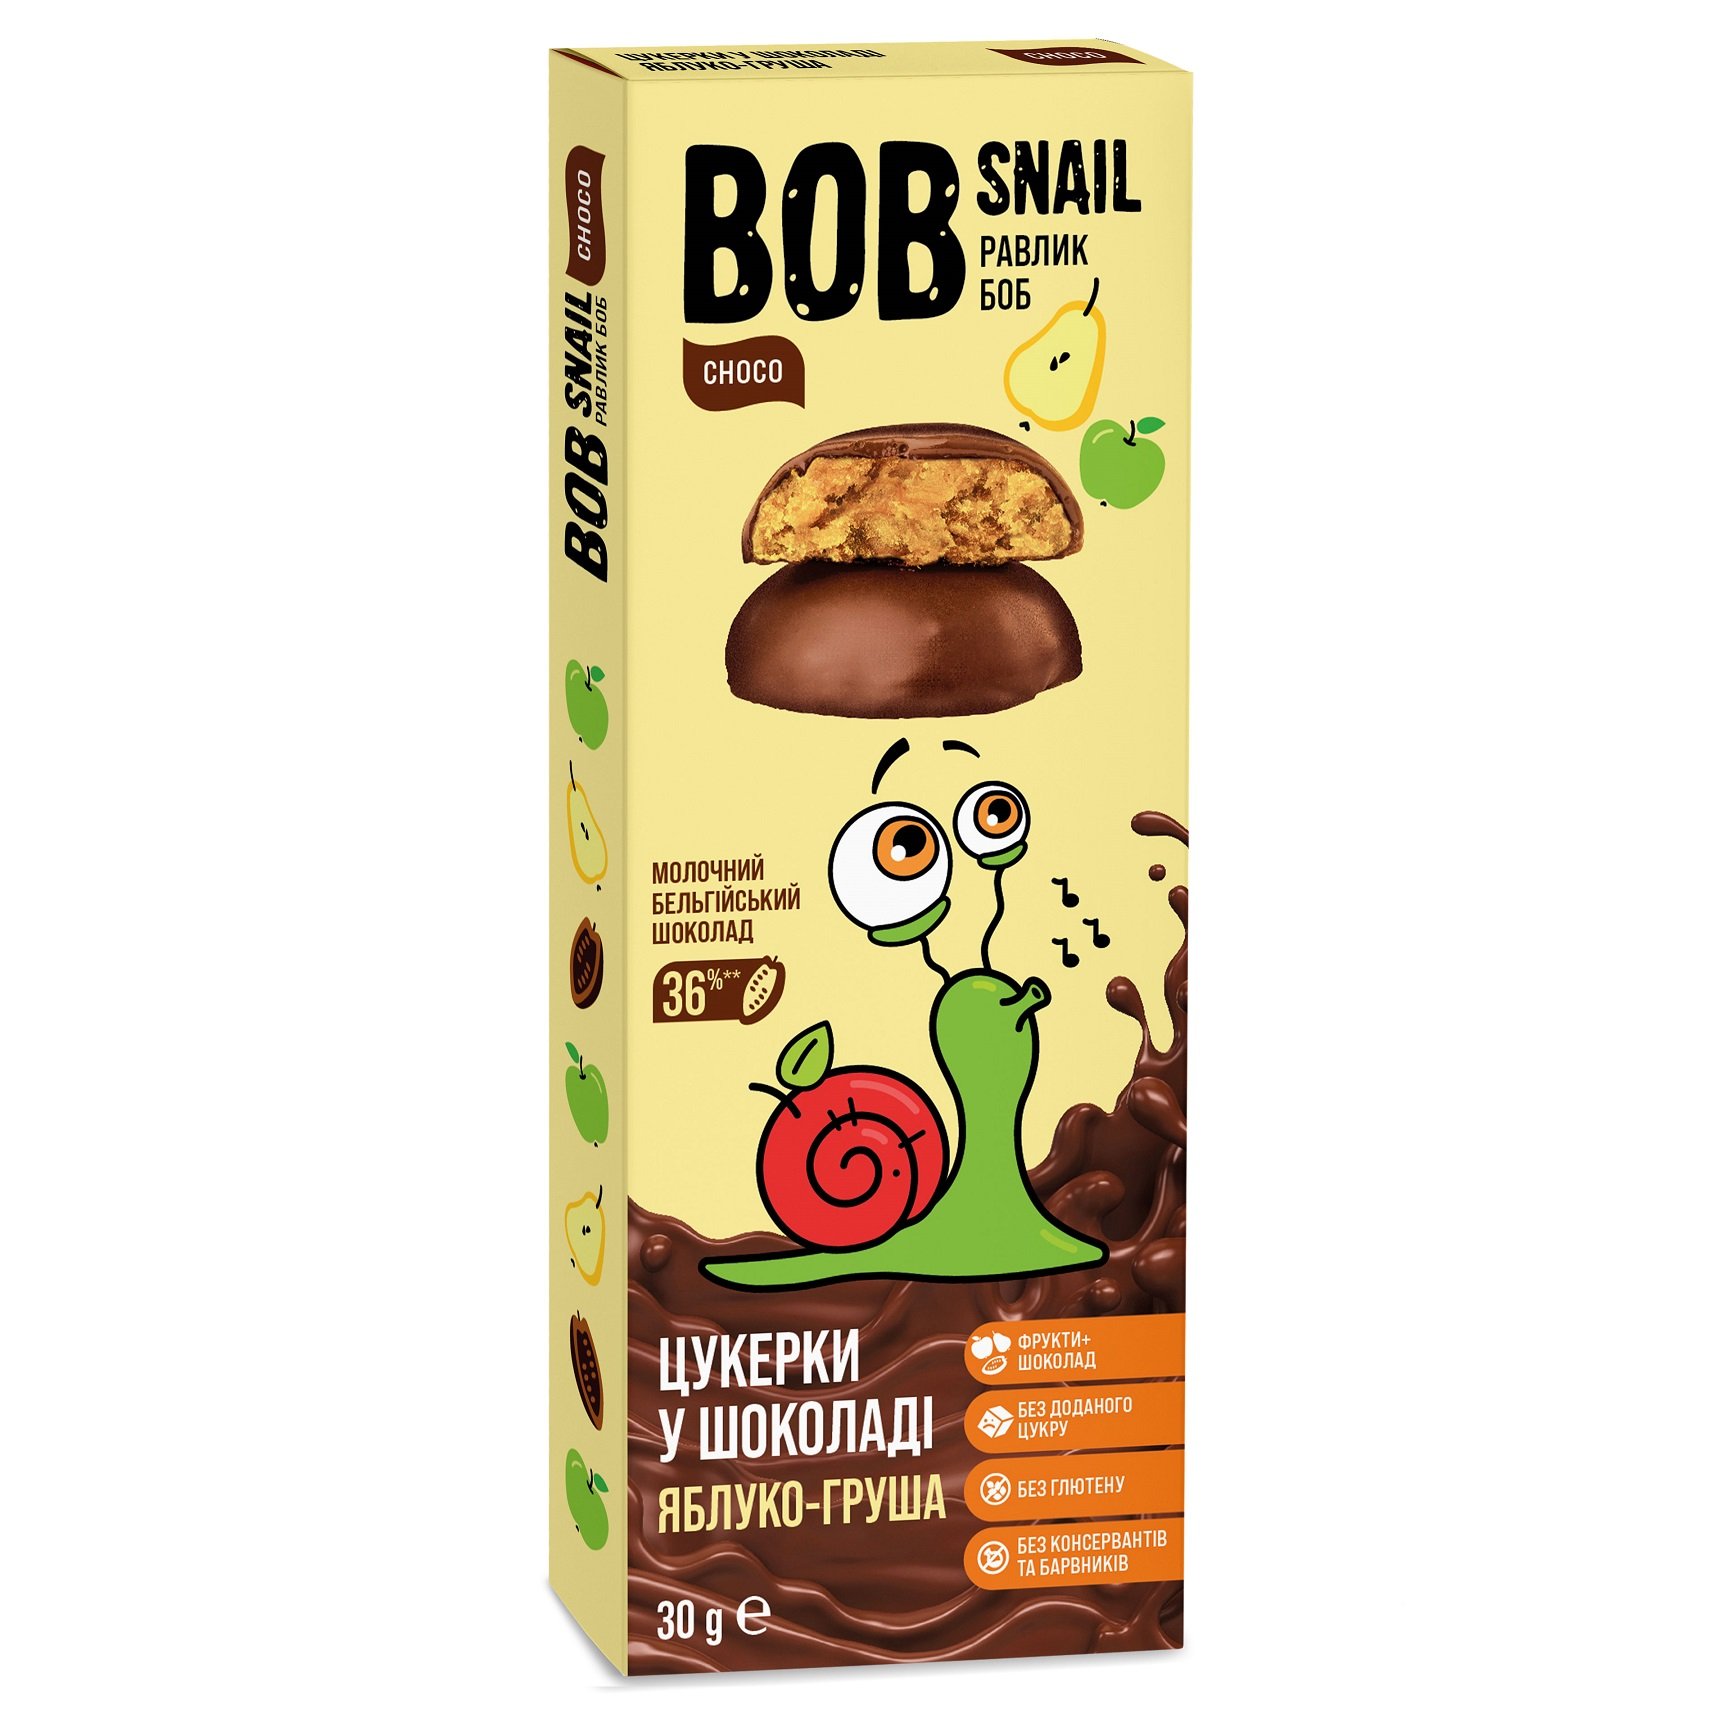 Натуральні цукерки Bob Snail Яблуко-Груша у молочному шоколаді, 30 г - фото 1